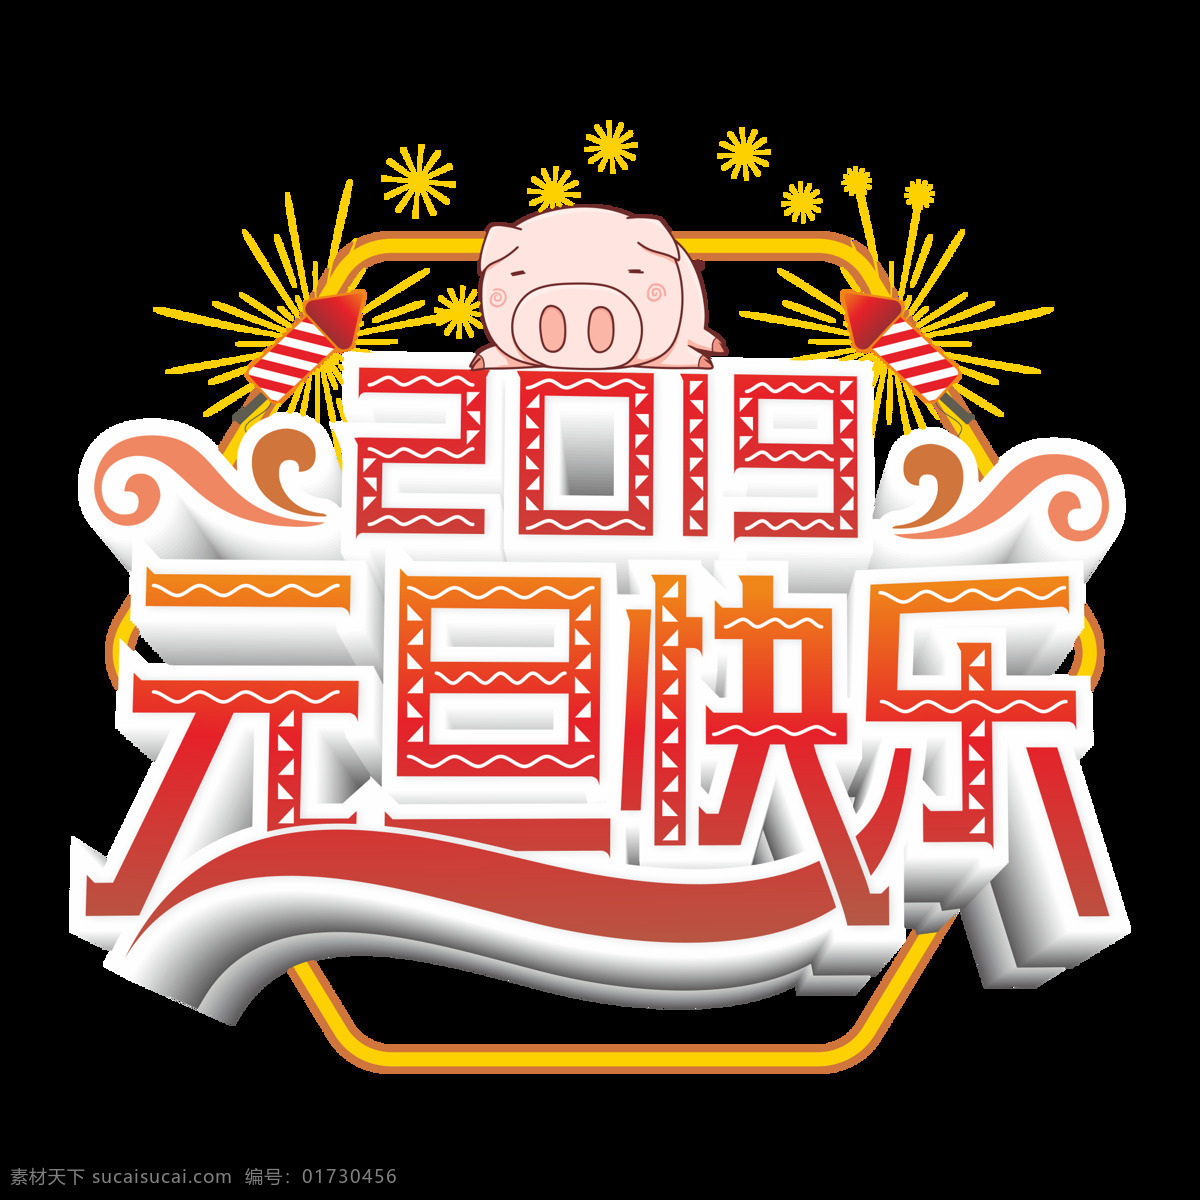 原创 商用 2019 元旦 快乐 艺术 字 立体 卡通猪 简约 创意 烟花 新年快乐 红色渐变 睡觉猪